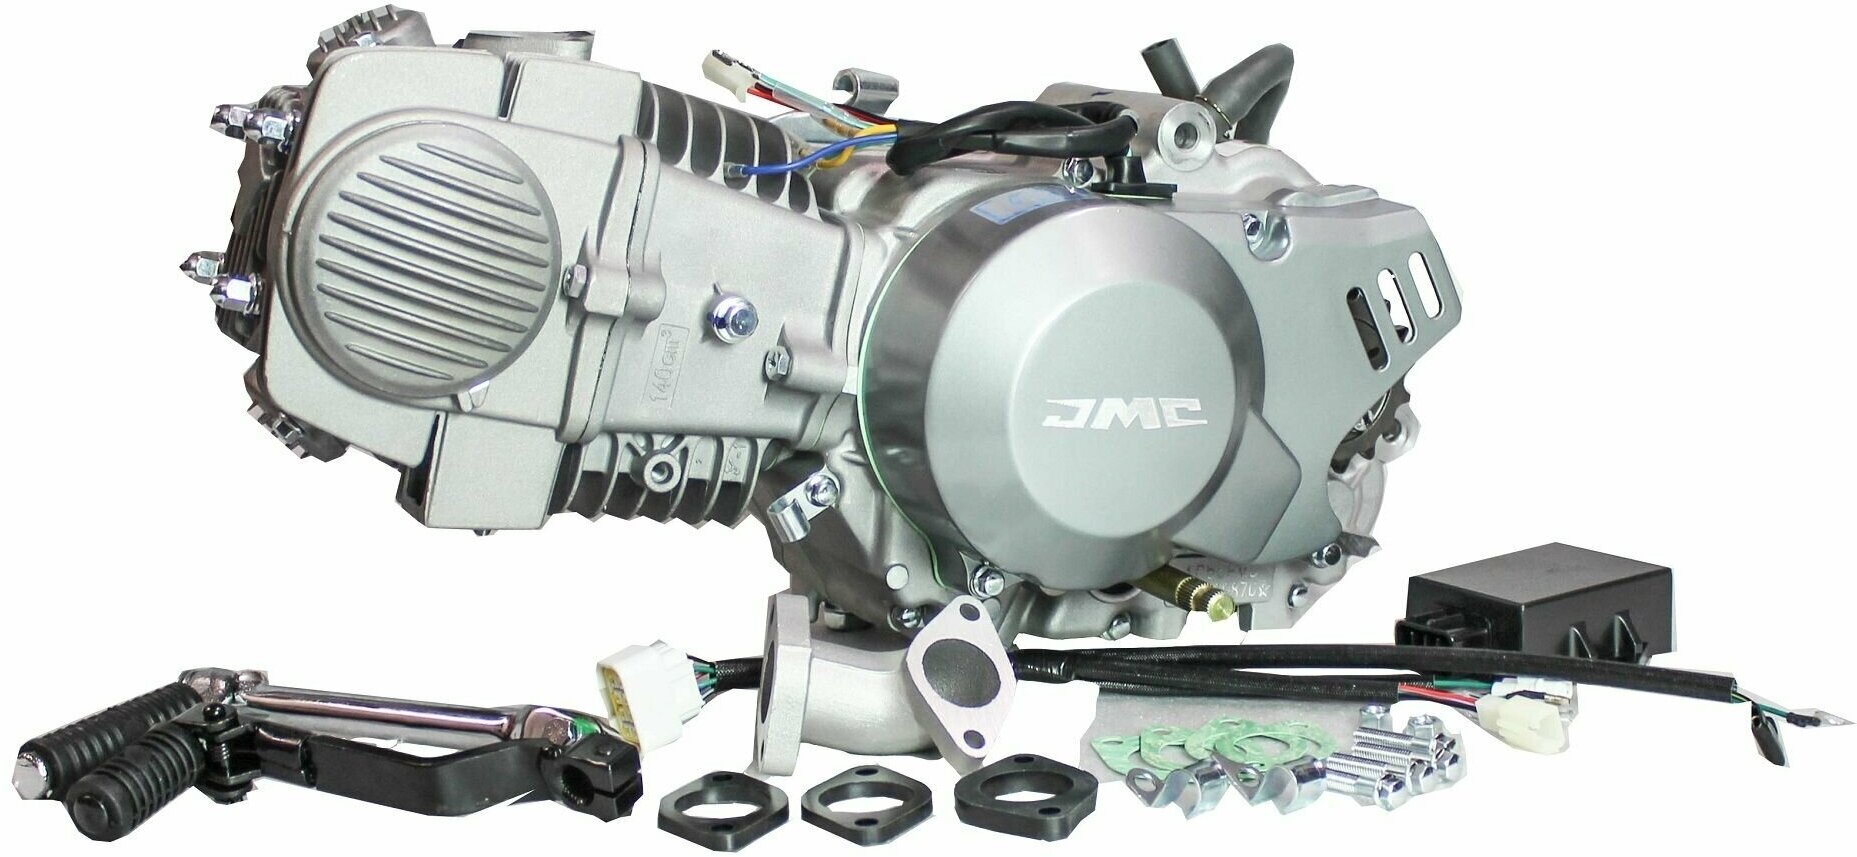 Двигатель JMC YX 140сс 1P56FMJ W063 Racing Version для питбайков